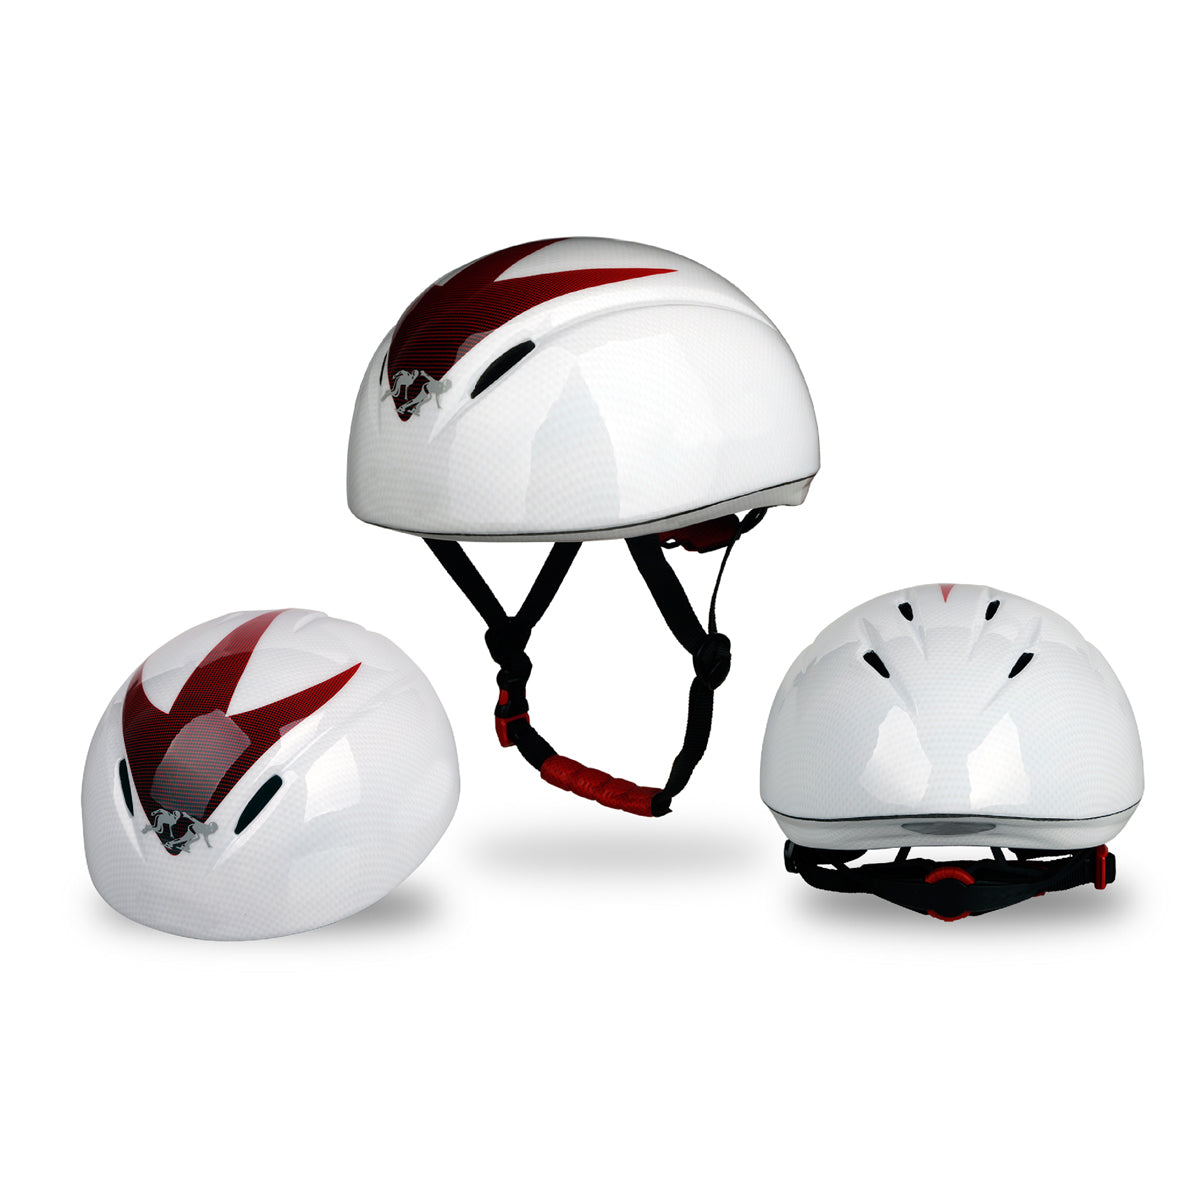 Gudook Short Track Speed Skating Helmet